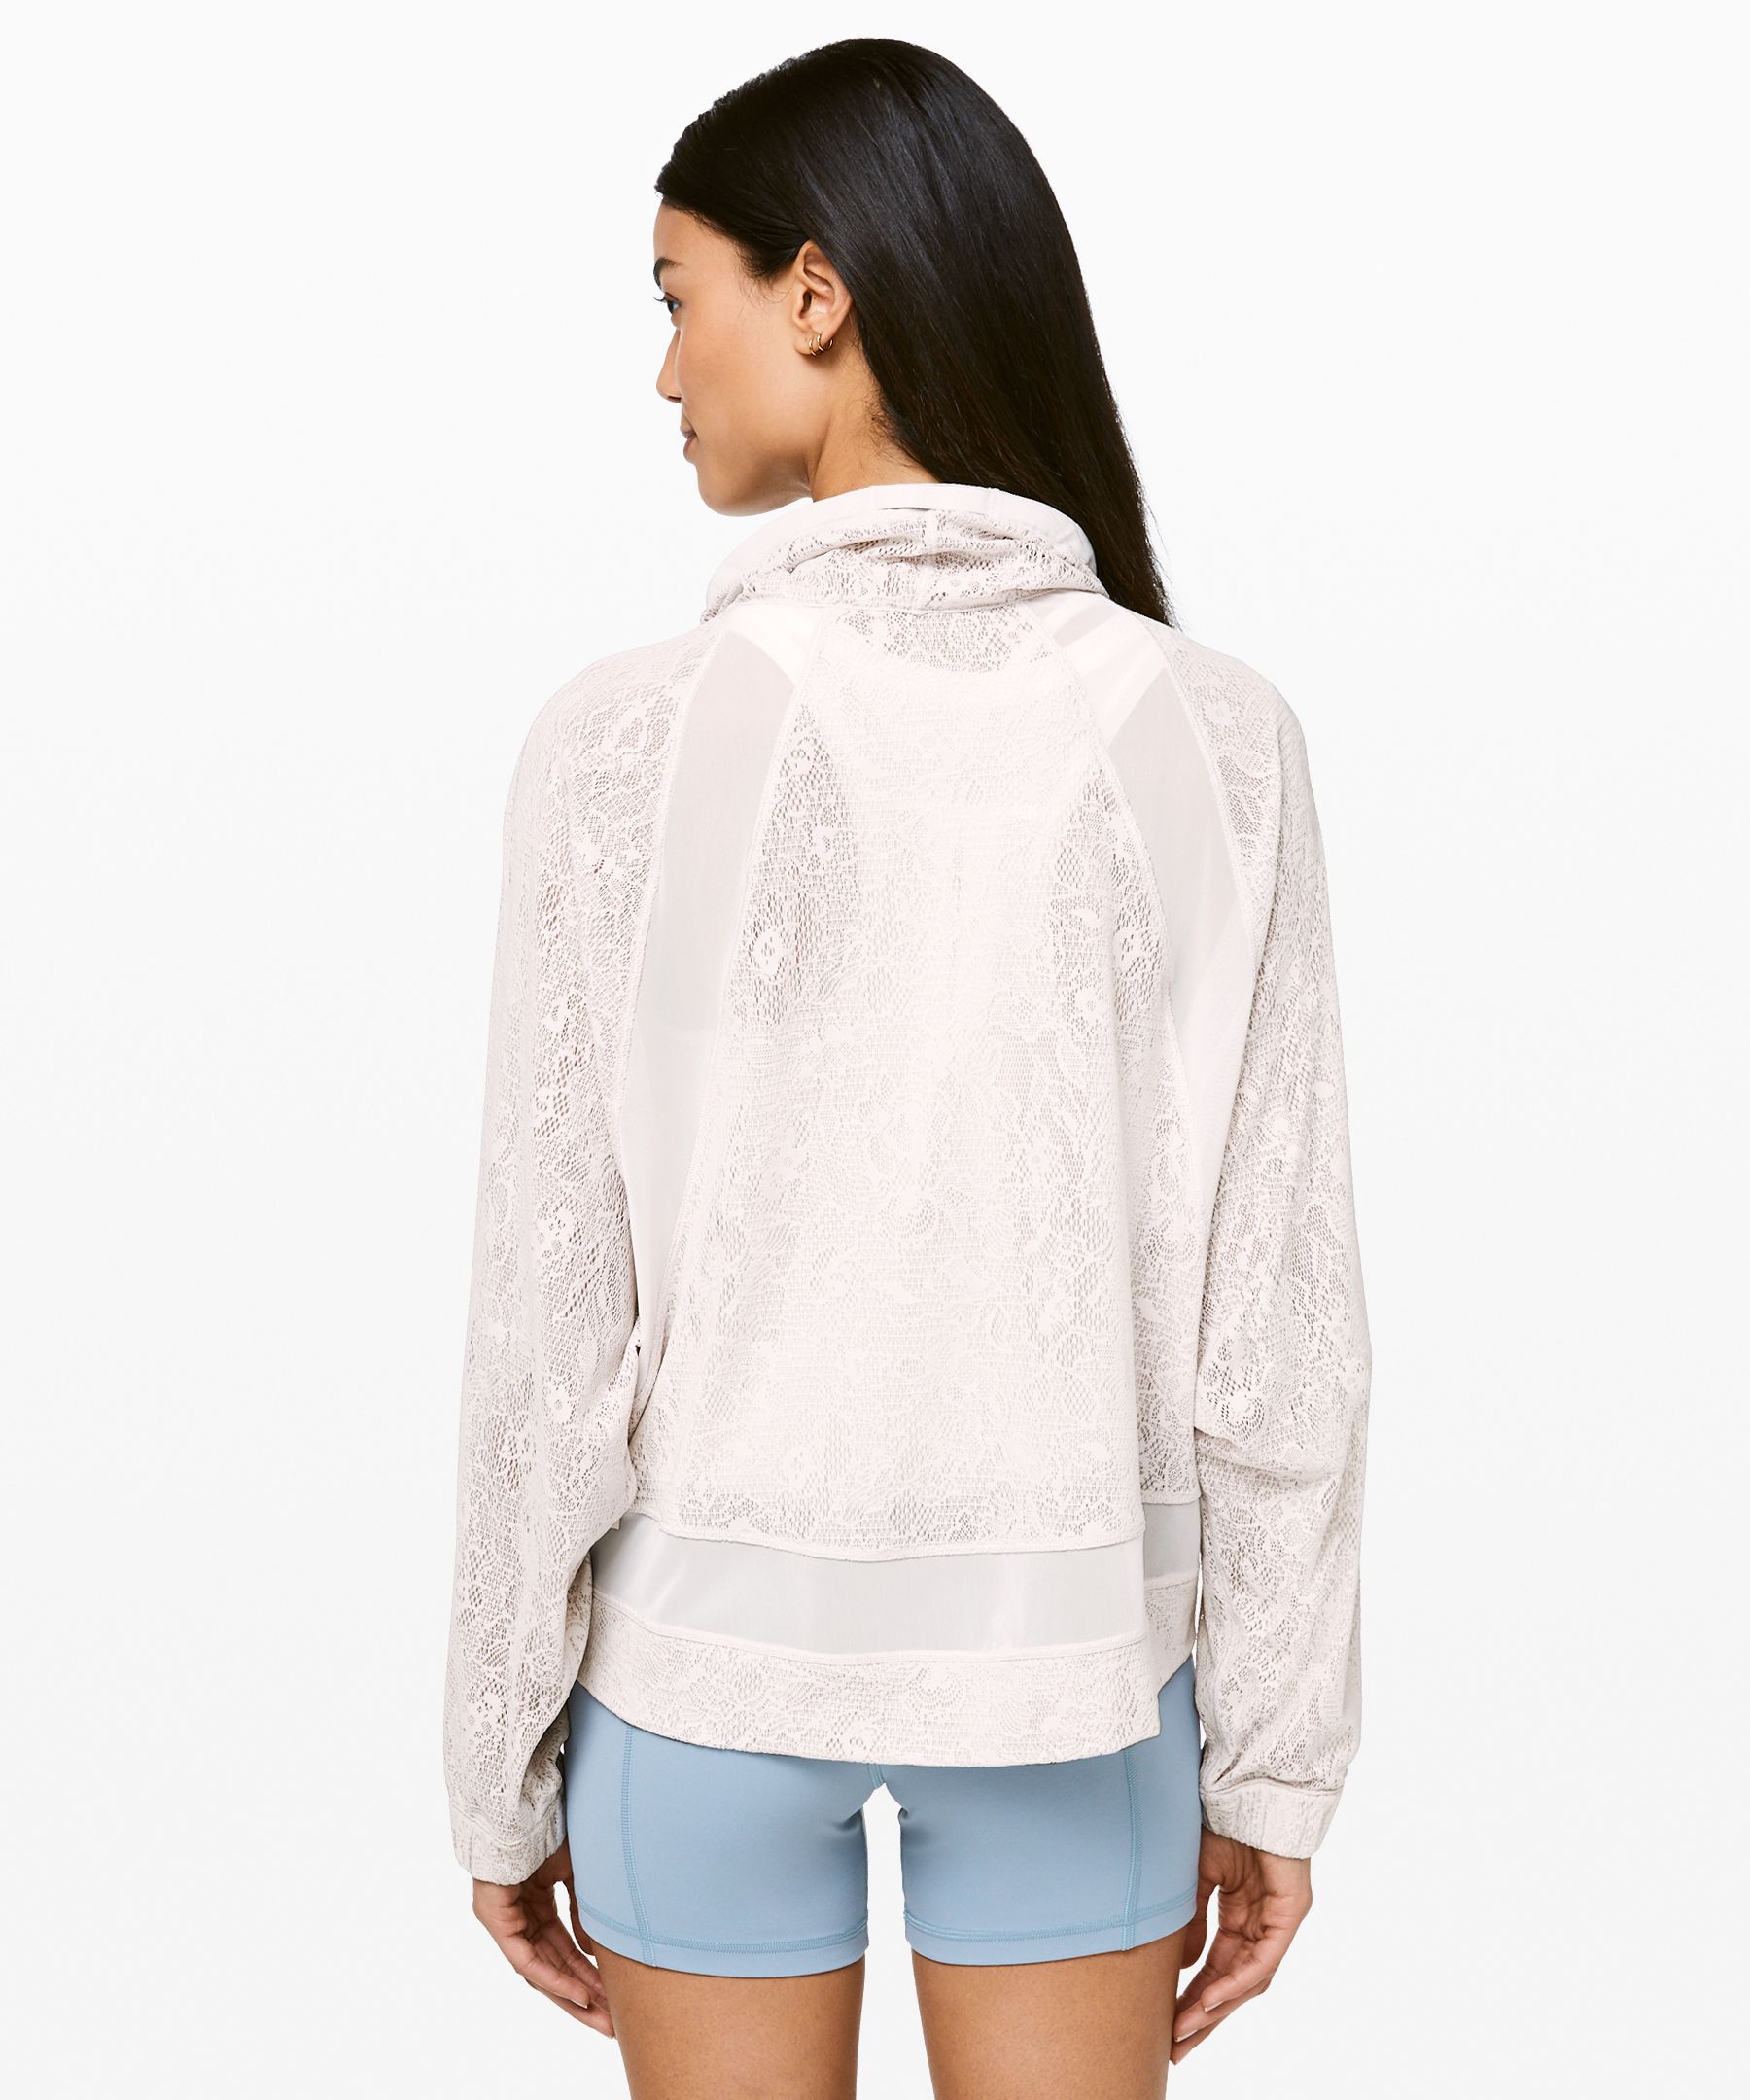 lululemon lace jacket